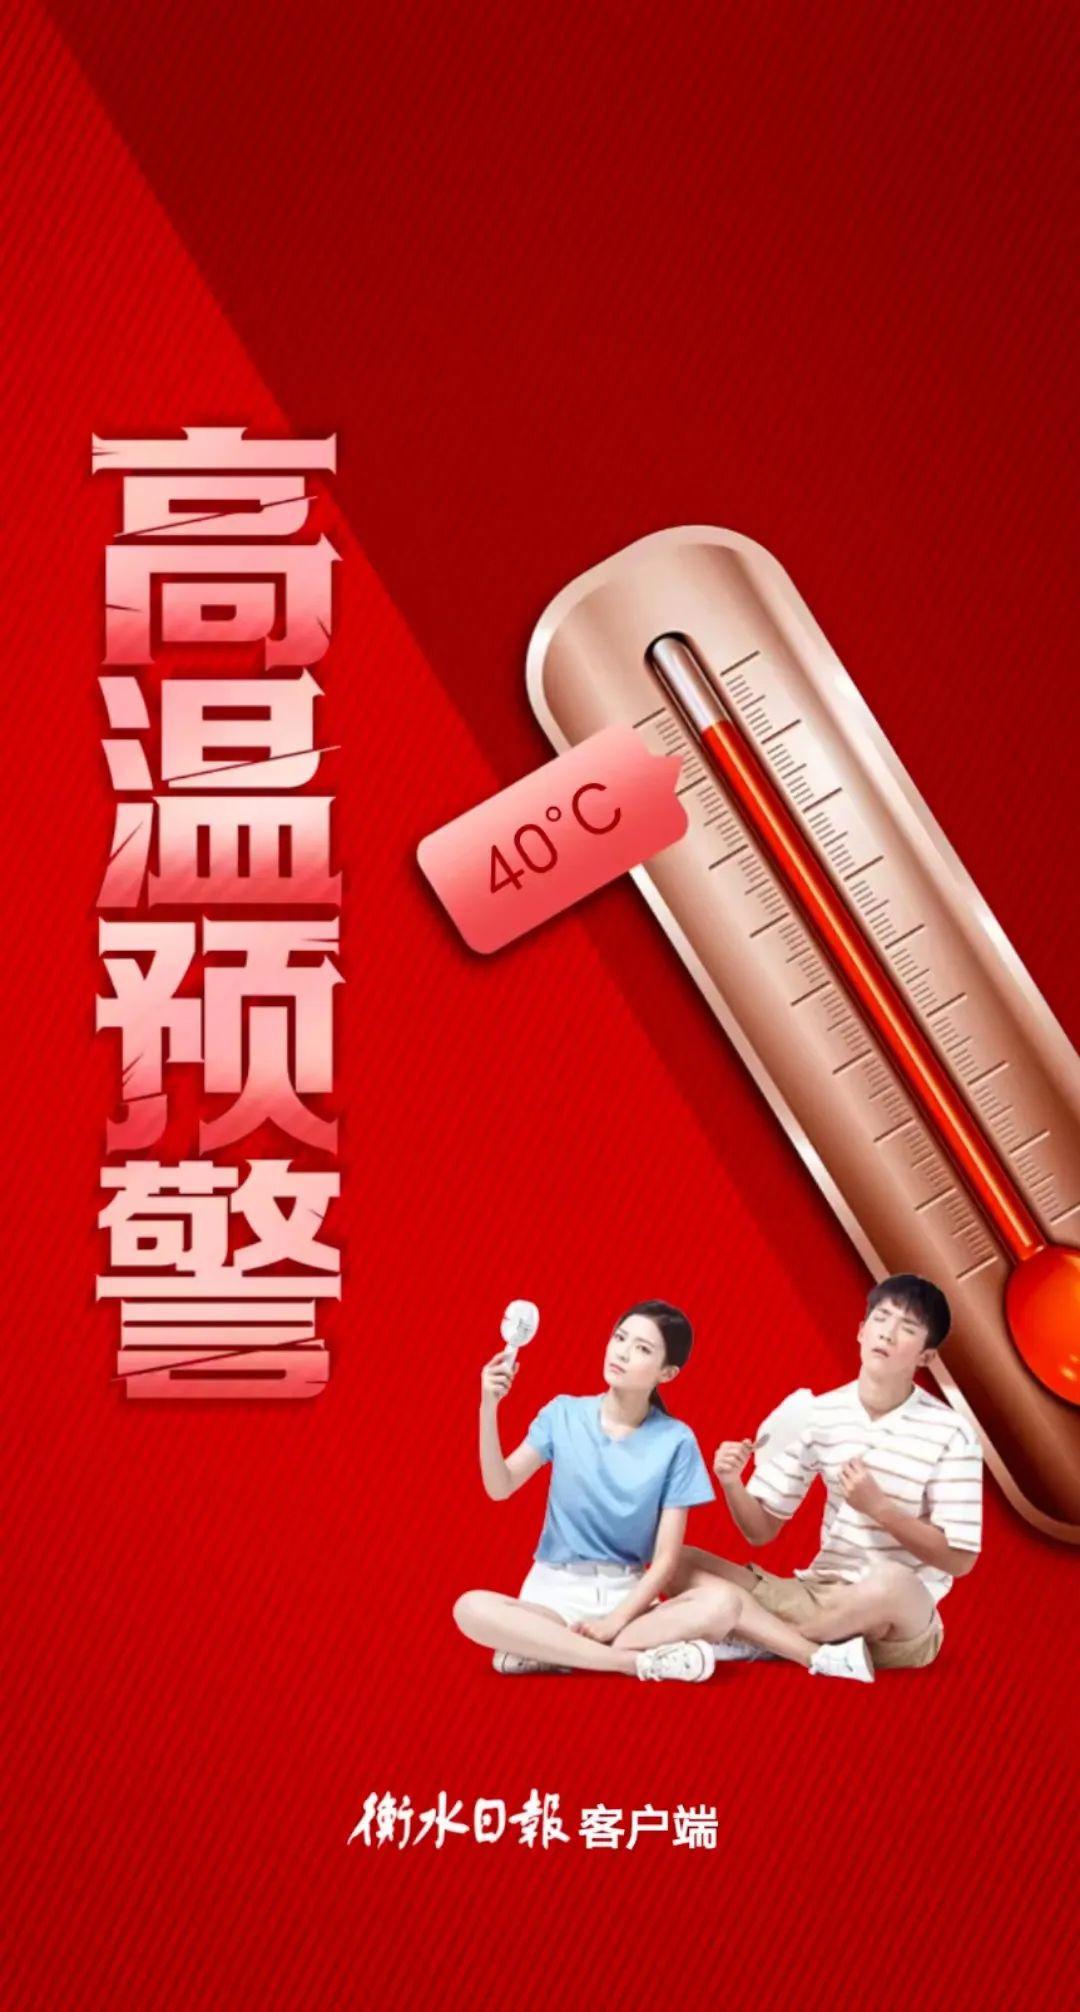 海报丨@衡水人高温红色预警来啦,注意防暑降温!